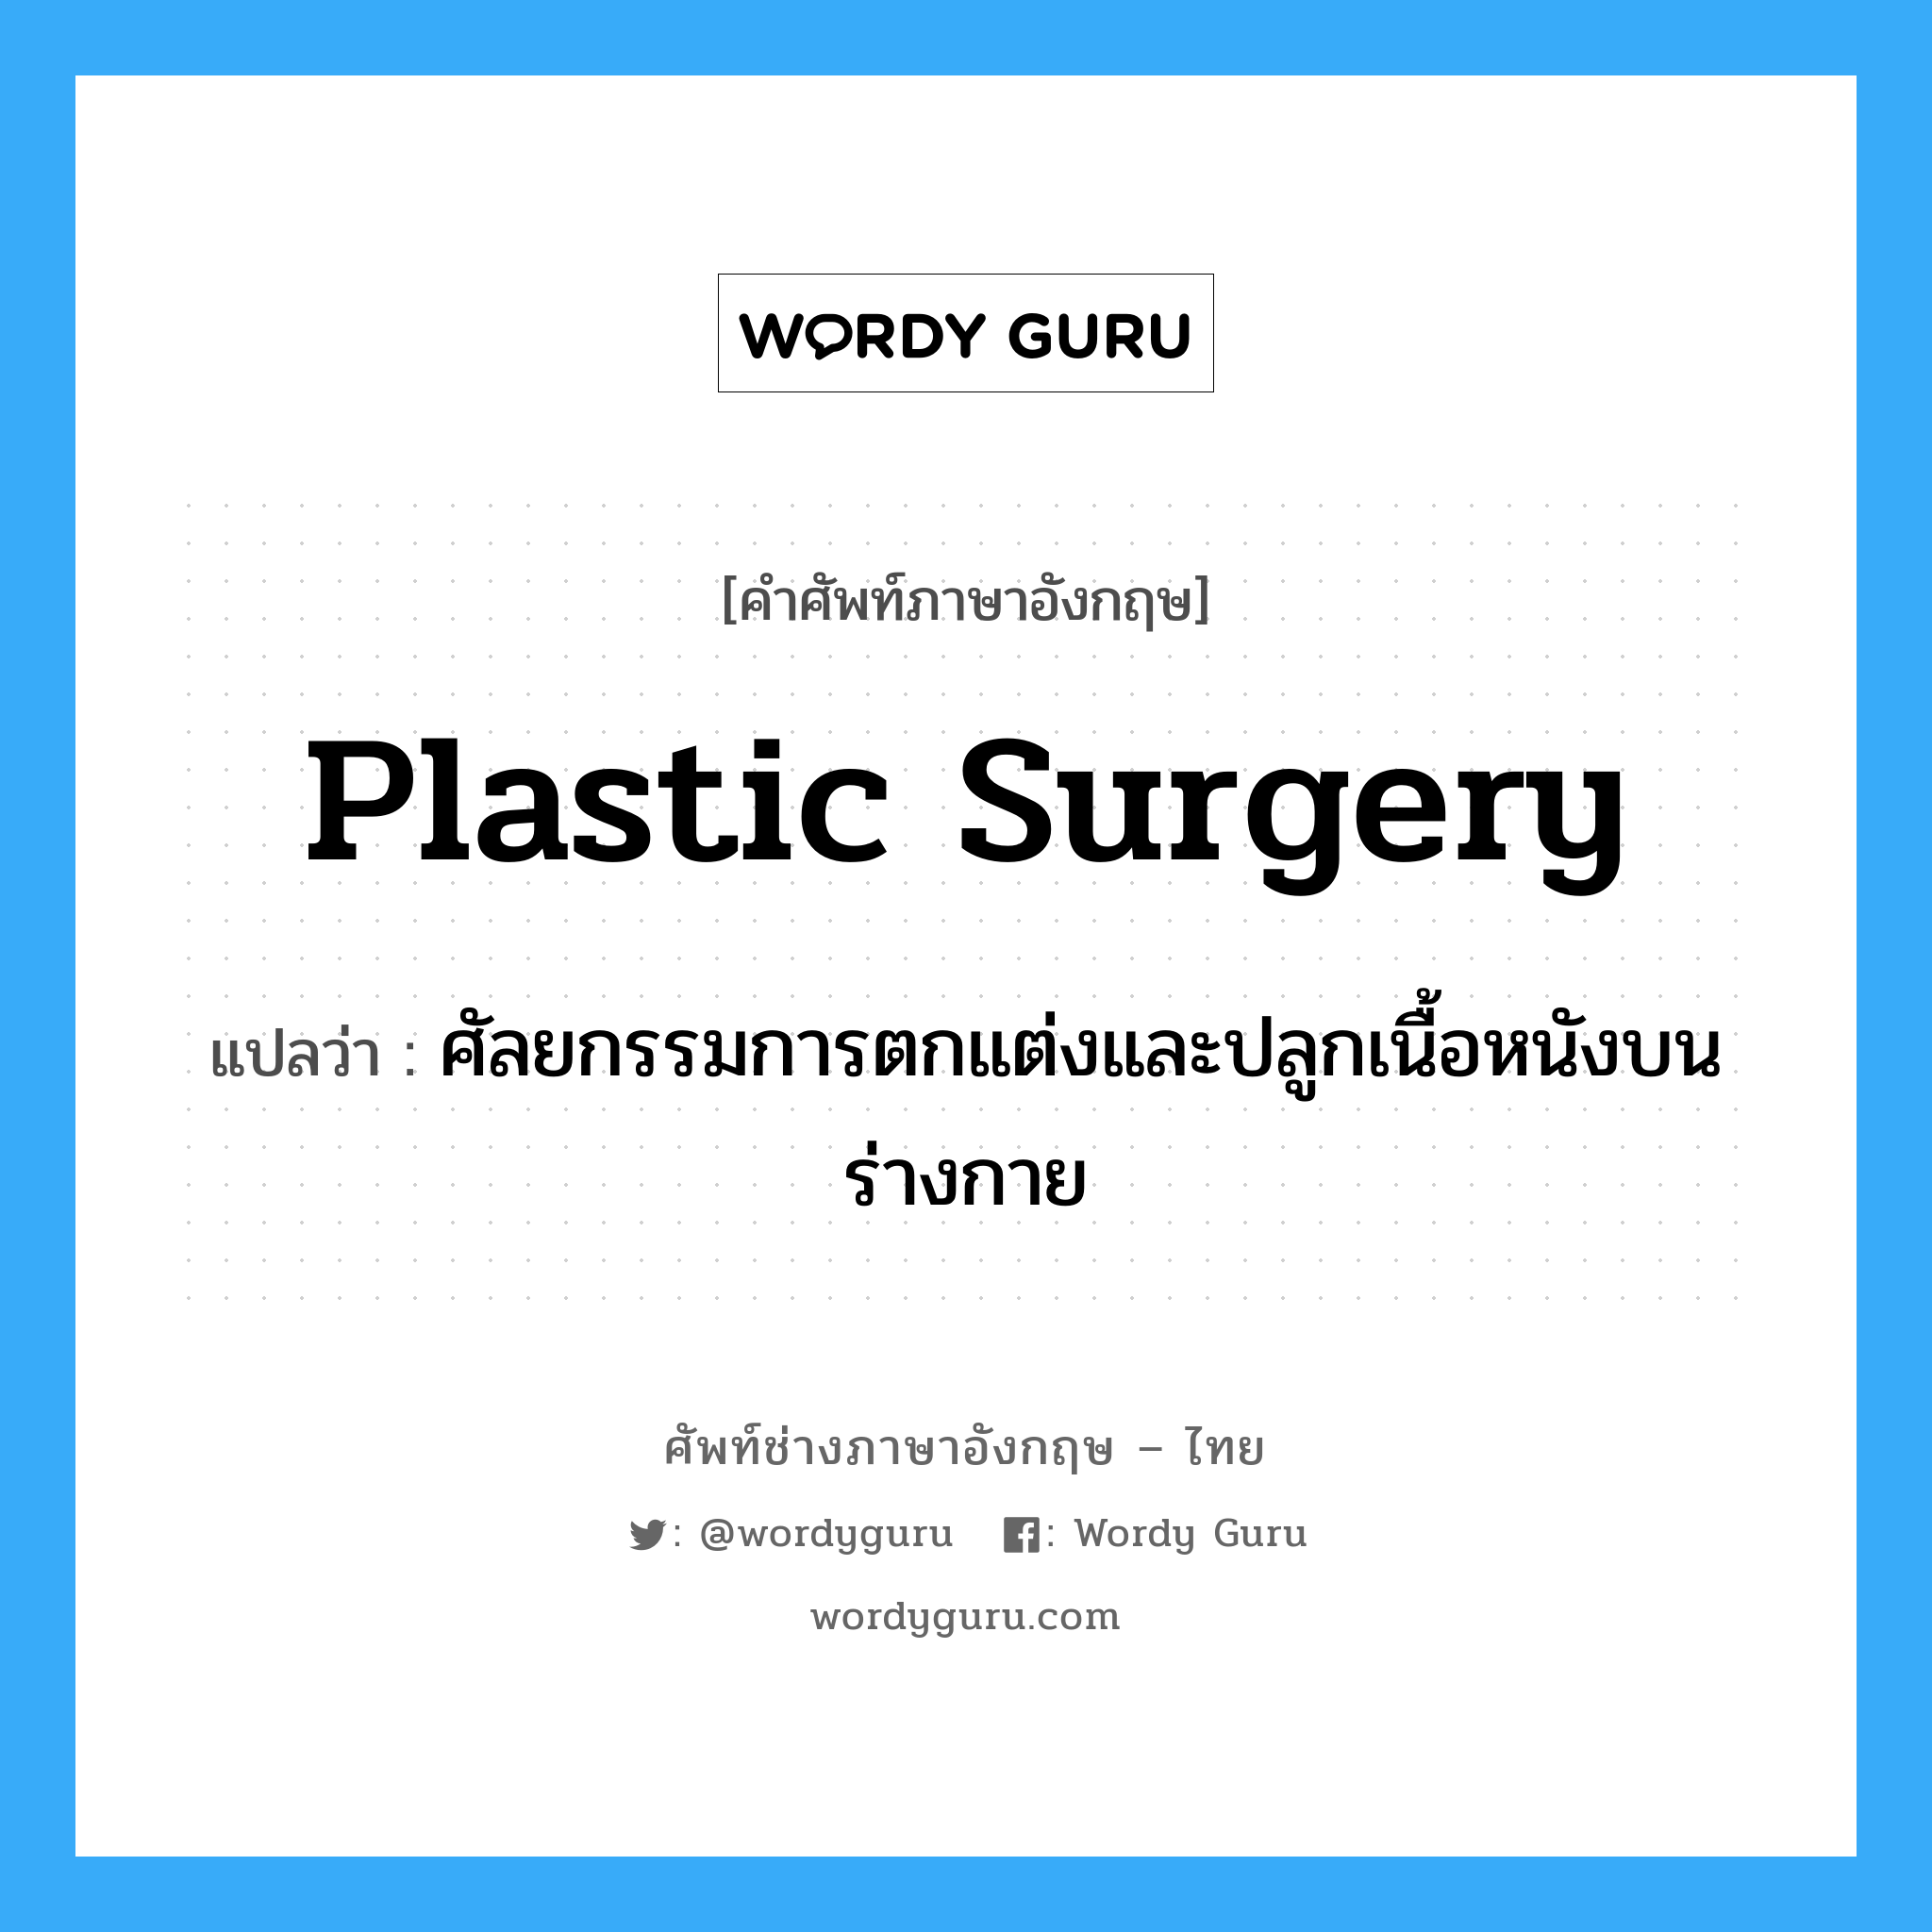 plastic surgery แปลว่า?, คำศัพท์ช่างภาษาอังกฤษ - ไทย plastic surgery คำศัพท์ภาษาอังกฤษ plastic surgery แปลว่า ศัลยกรรมการตกแต่งและปลูกเนื้อหนังบนร่างกาย